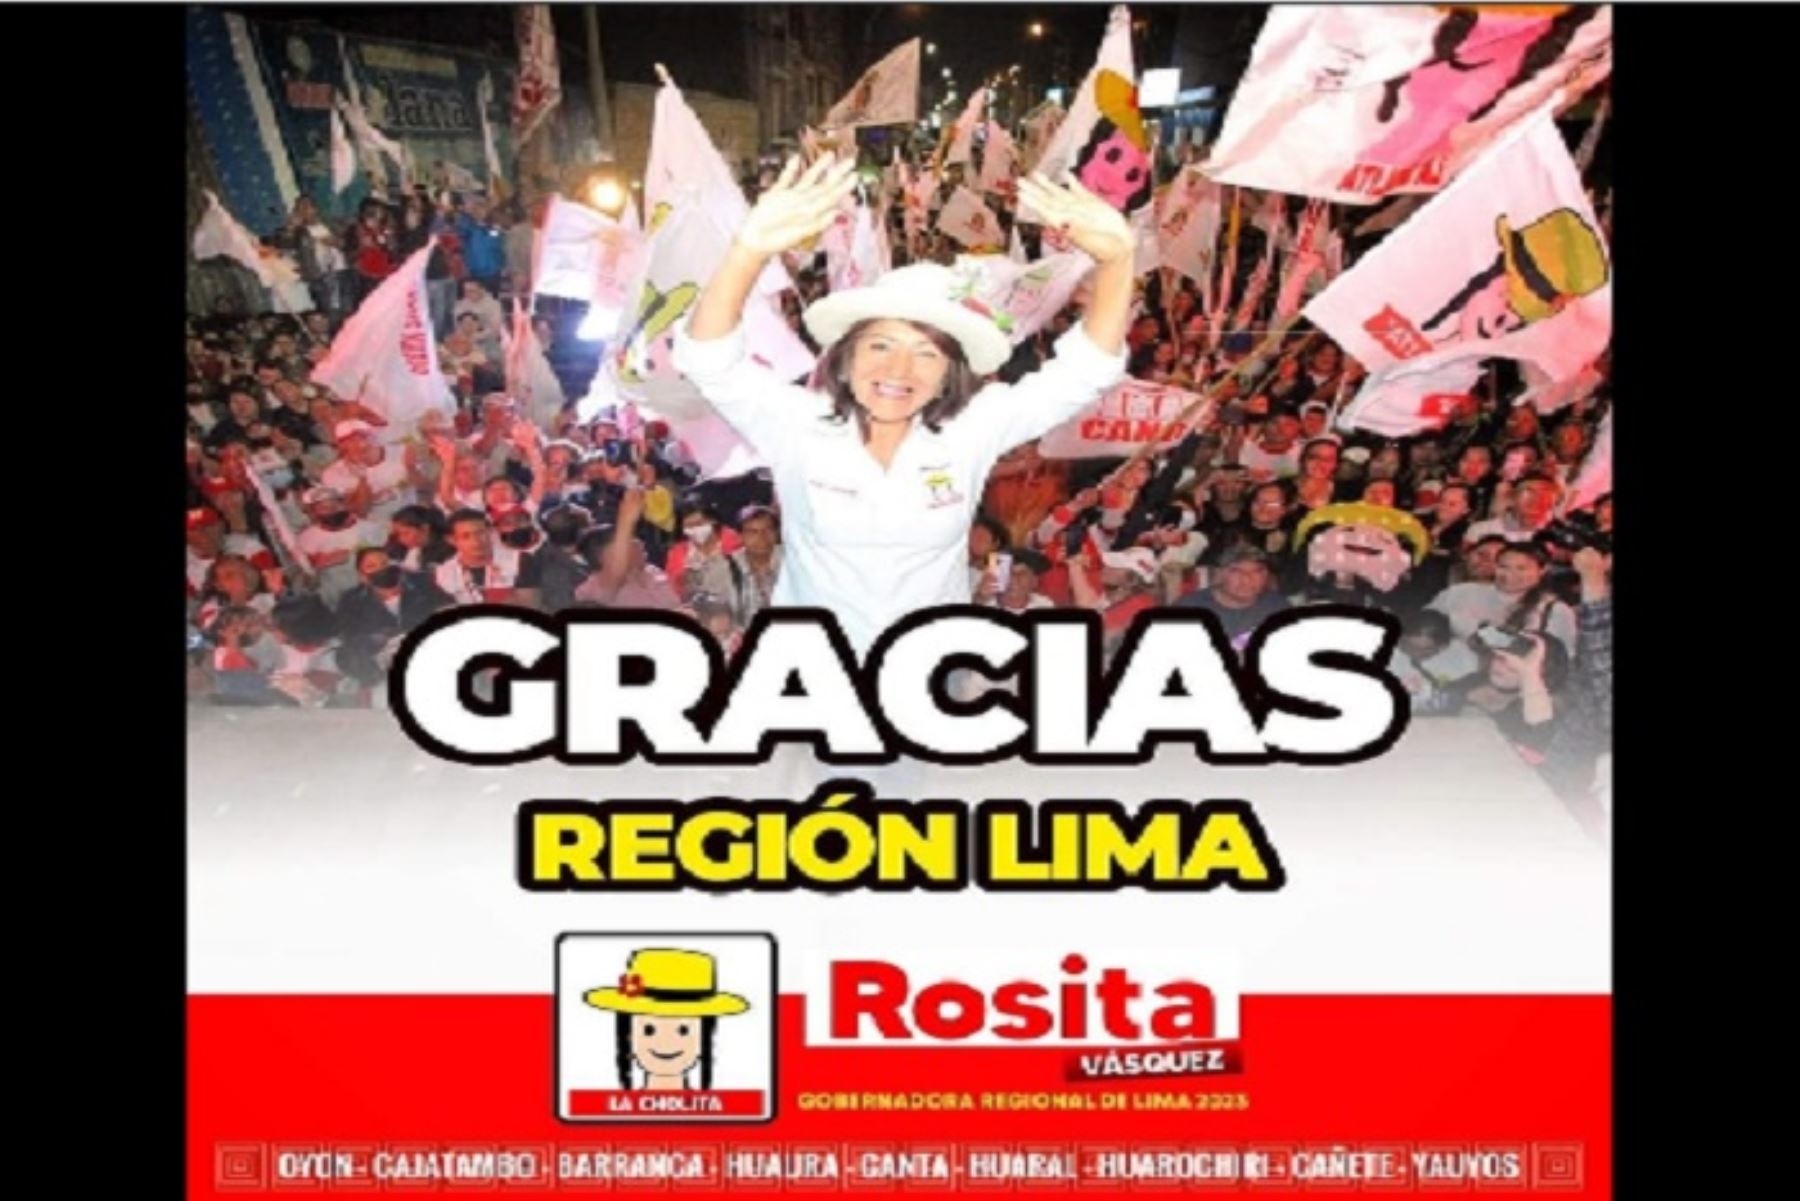 Rosa Vásquez sucederá en el cargo al gobernador regional de Lima Provincias, Ricardo Chavarría, para el periodo 2023-2026.